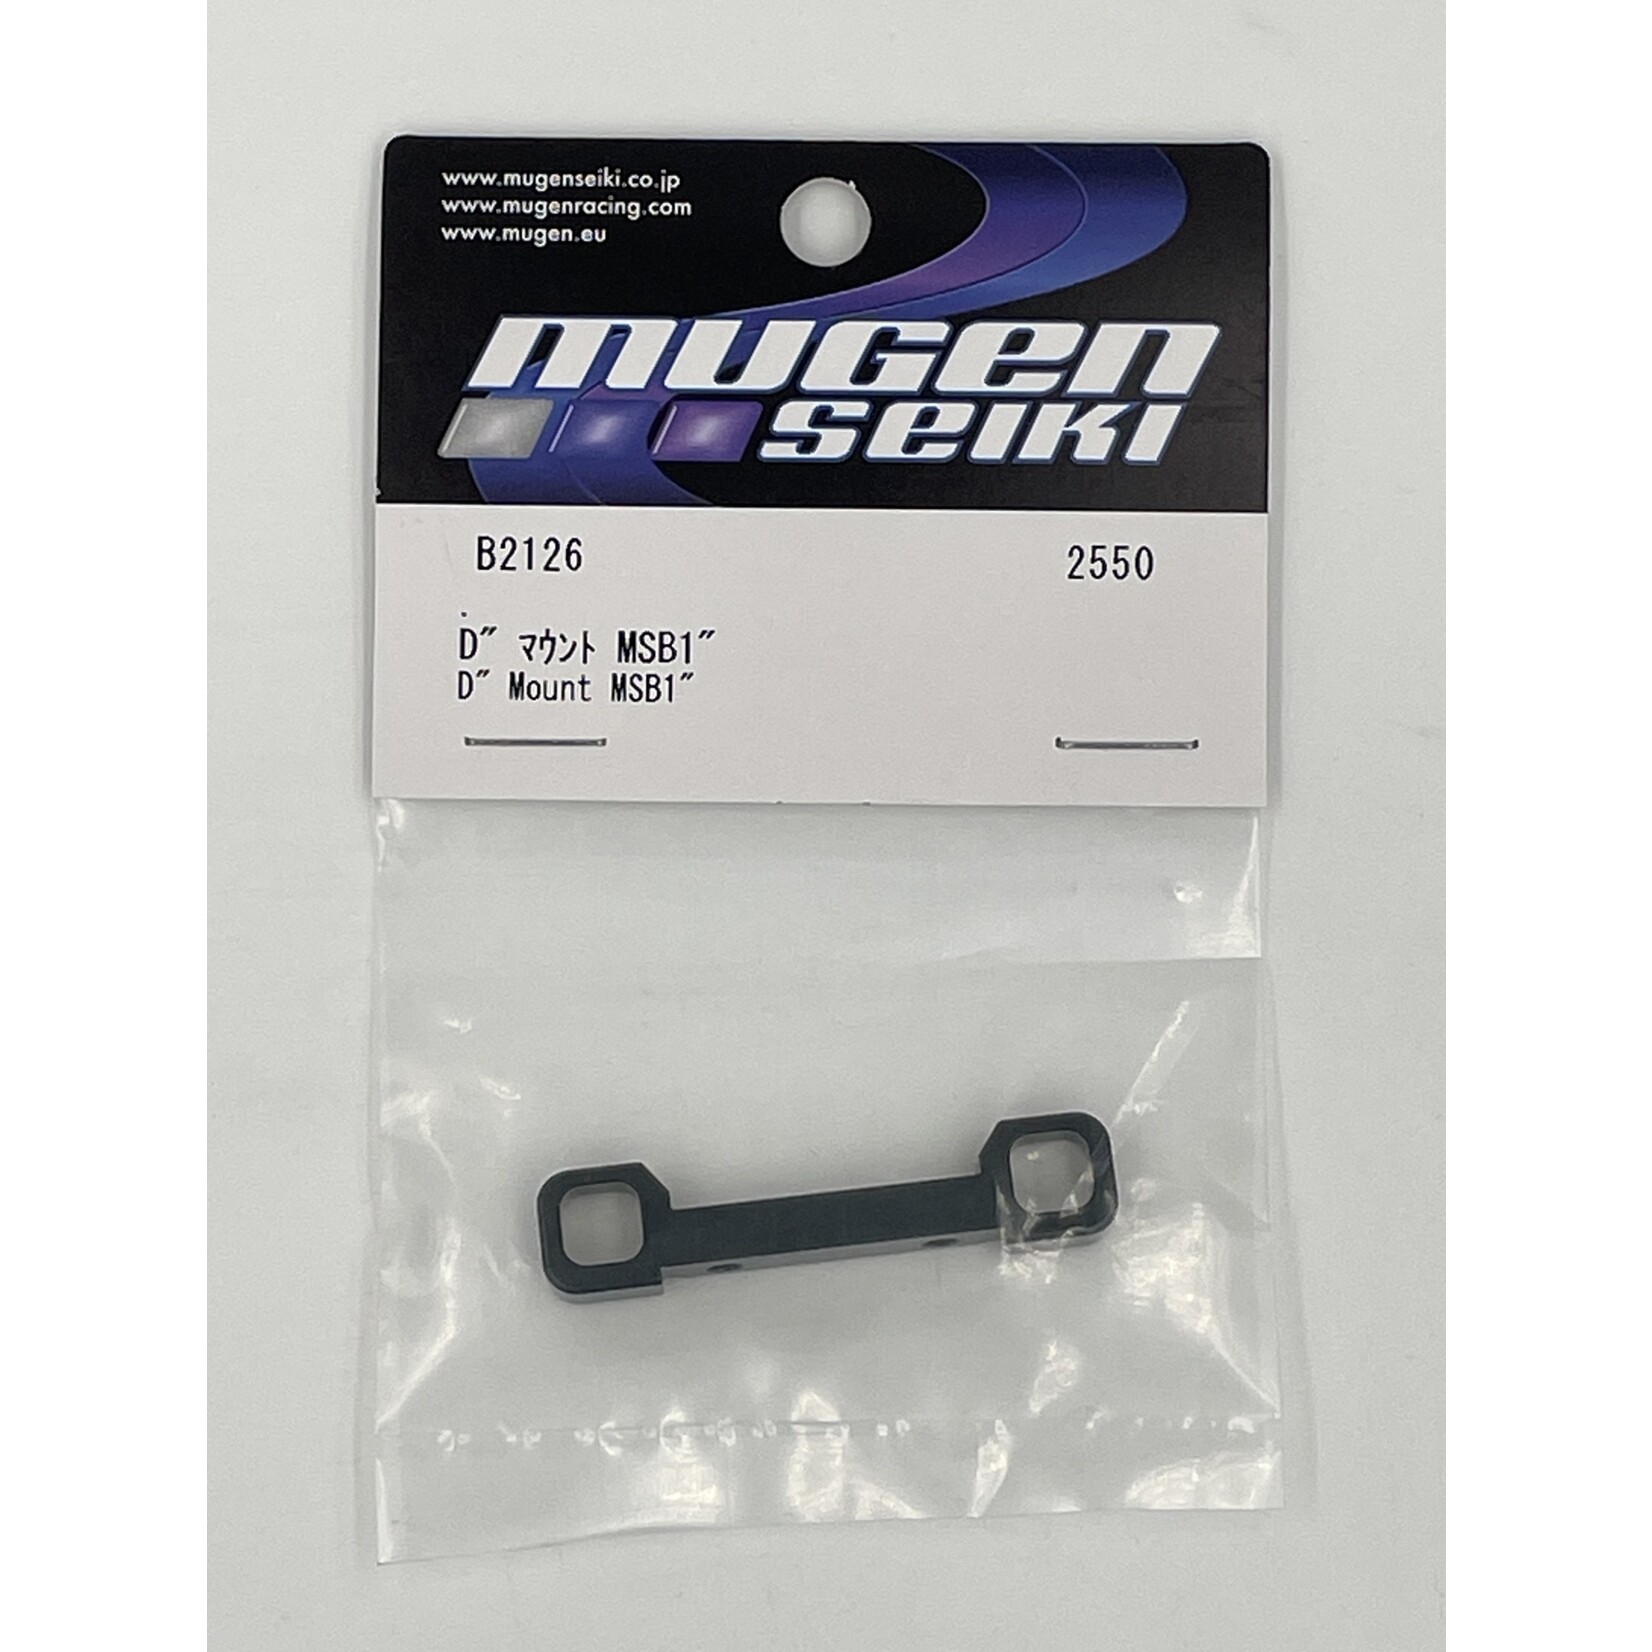 Mugen B2126 Mugen Front/Rear "D" Mount: MSB1